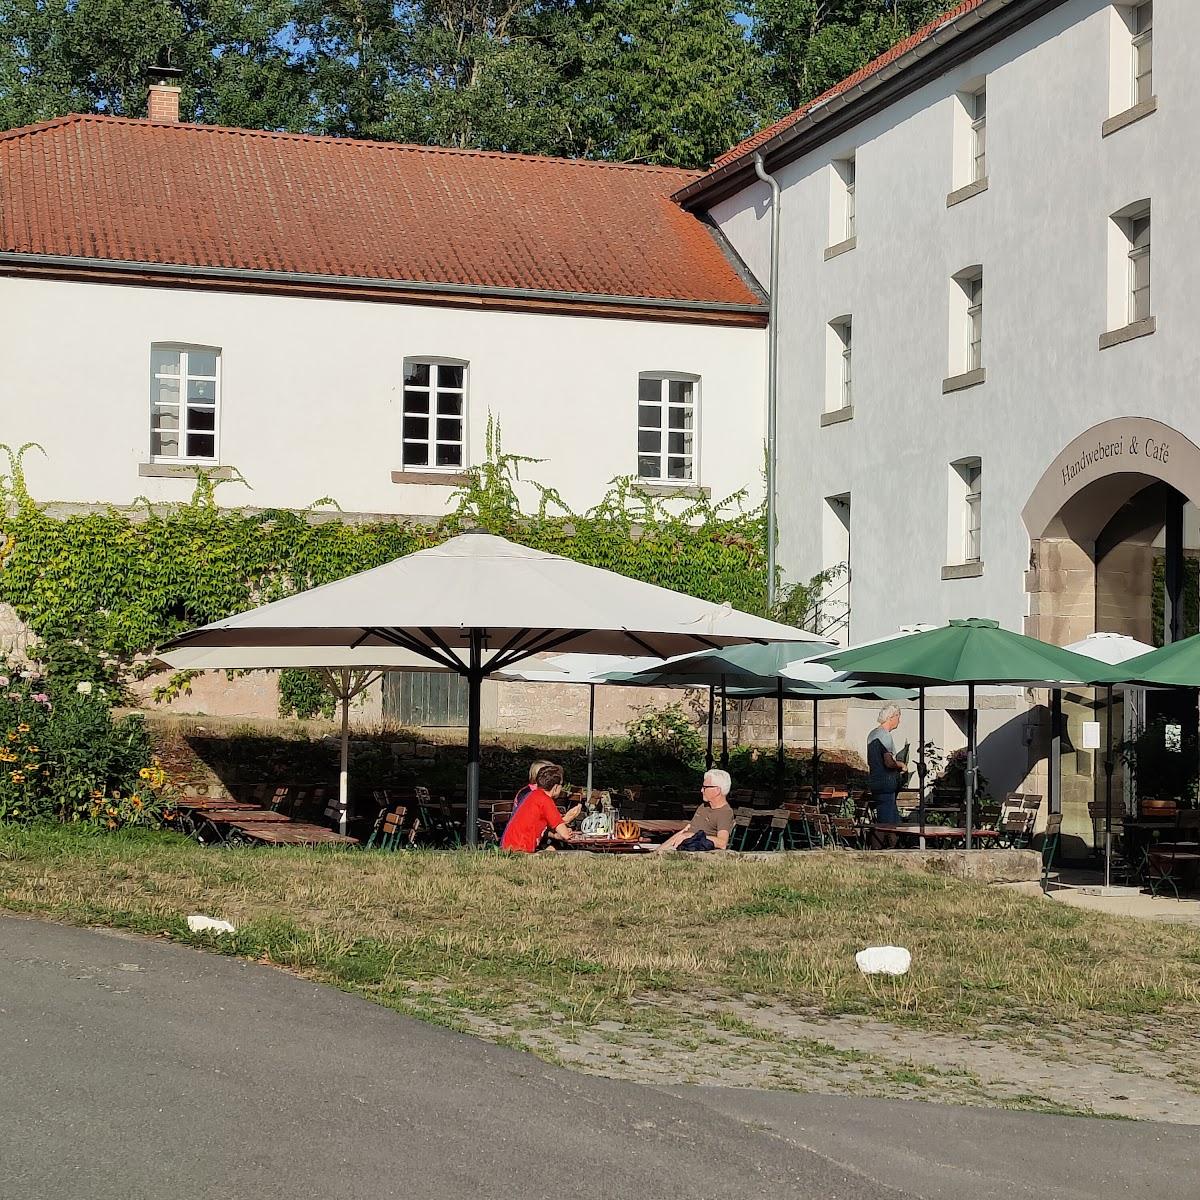 Restaurant "Das Cafe im Rittergut Besenhausen" in Friedland